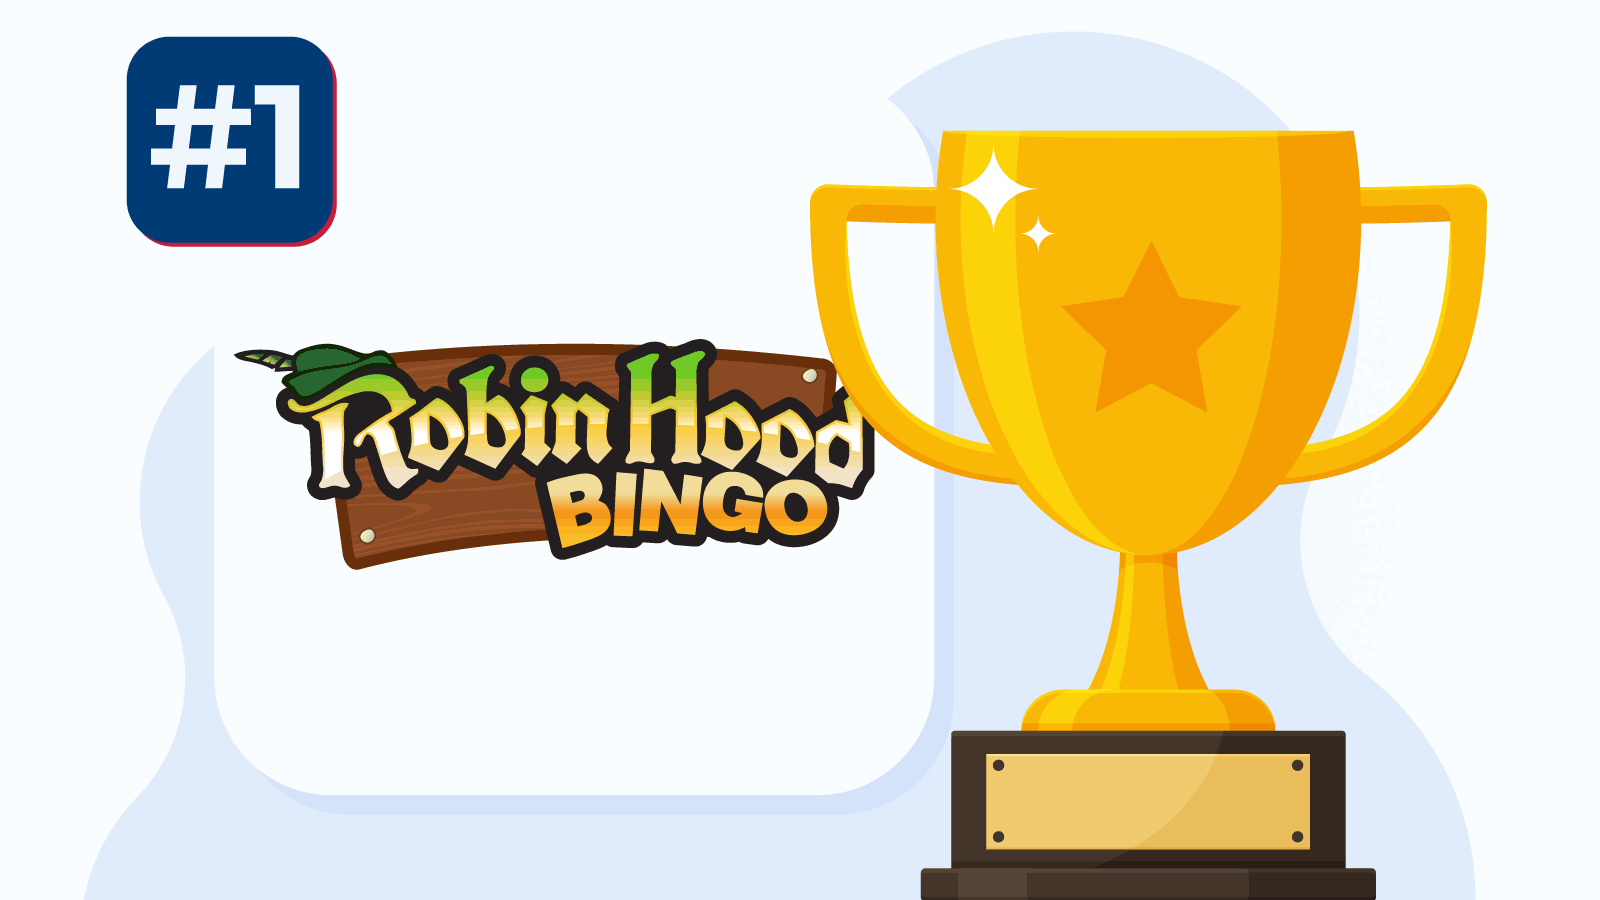 #1. Robin Hood Bingo Best for themed bingo rooms